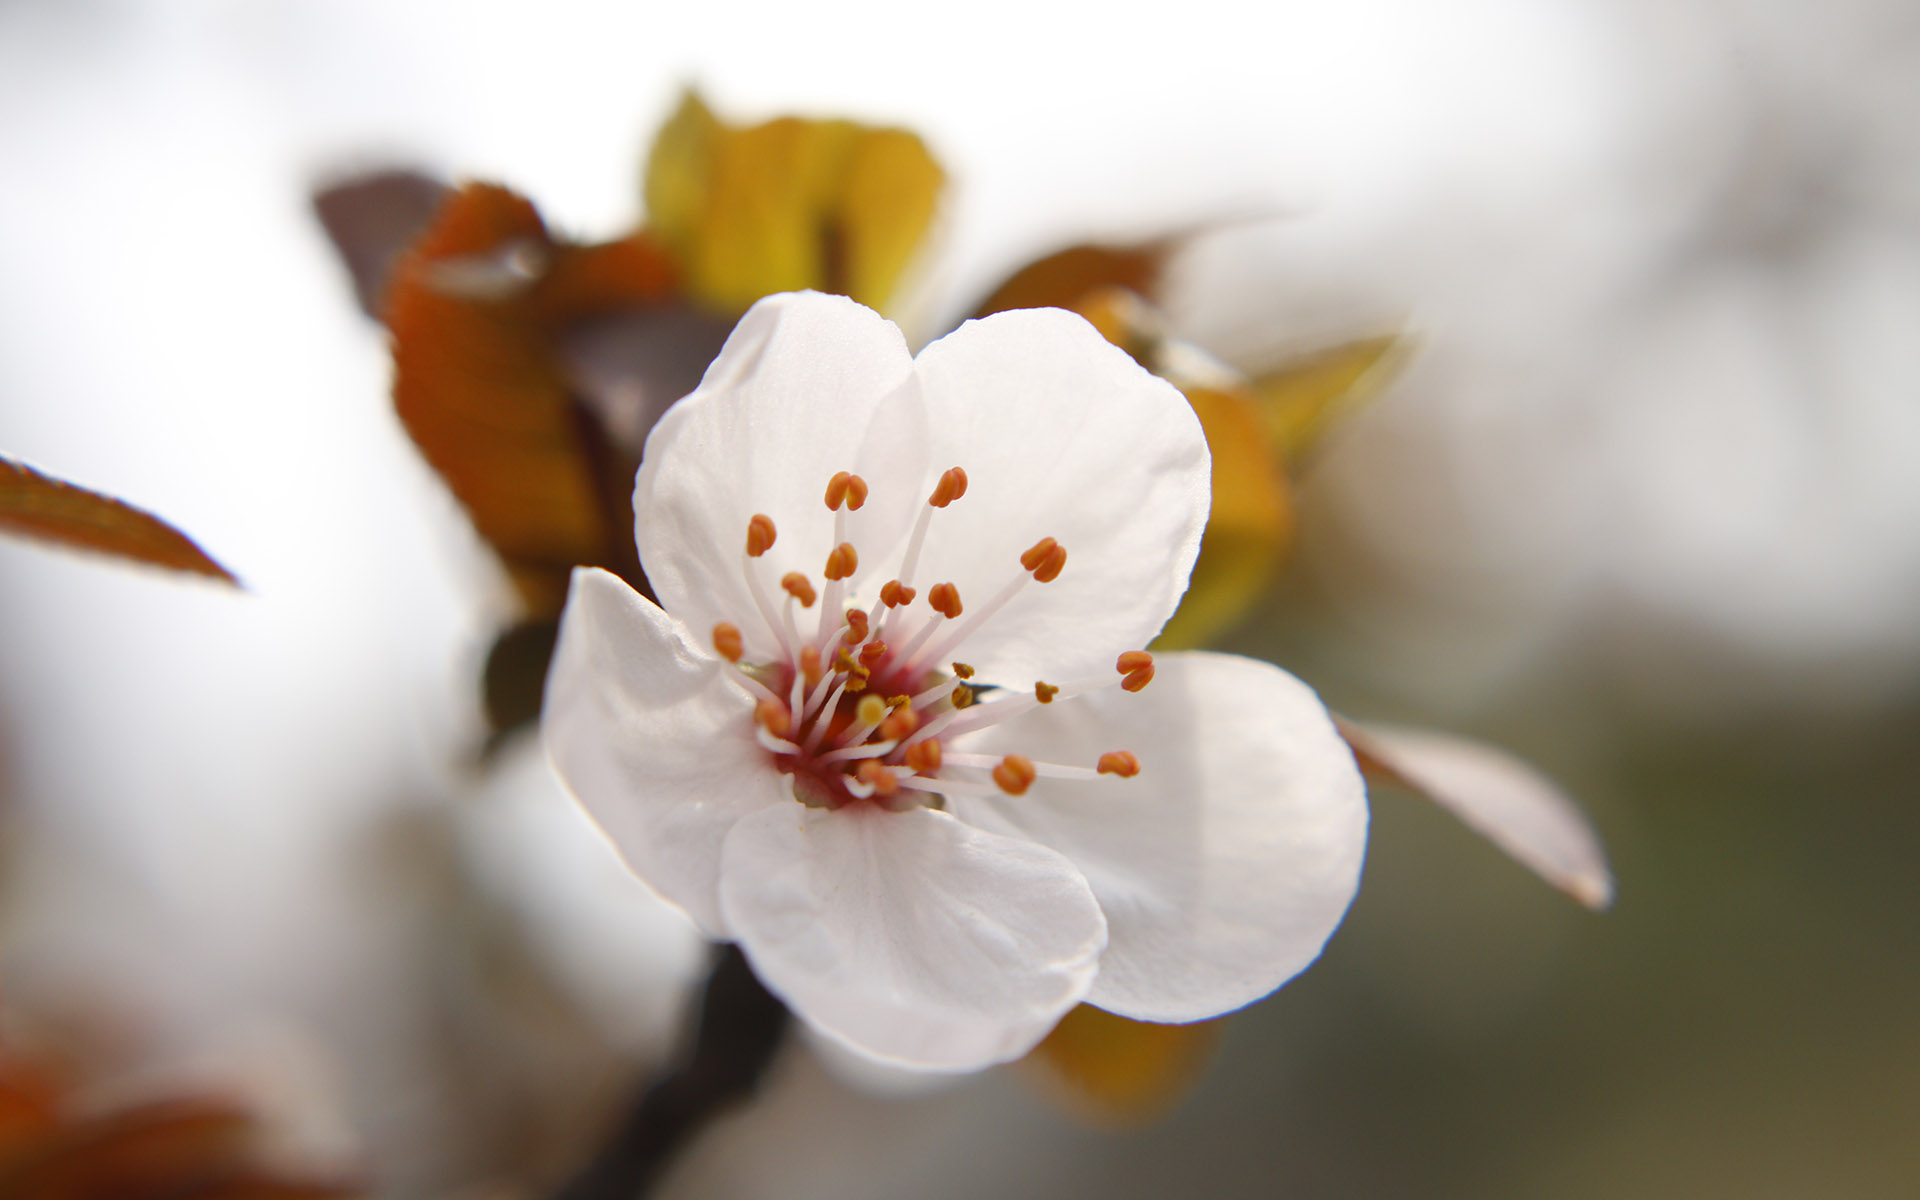 美丽图片素材 唯美纯白樱花高清摄影图片(7)